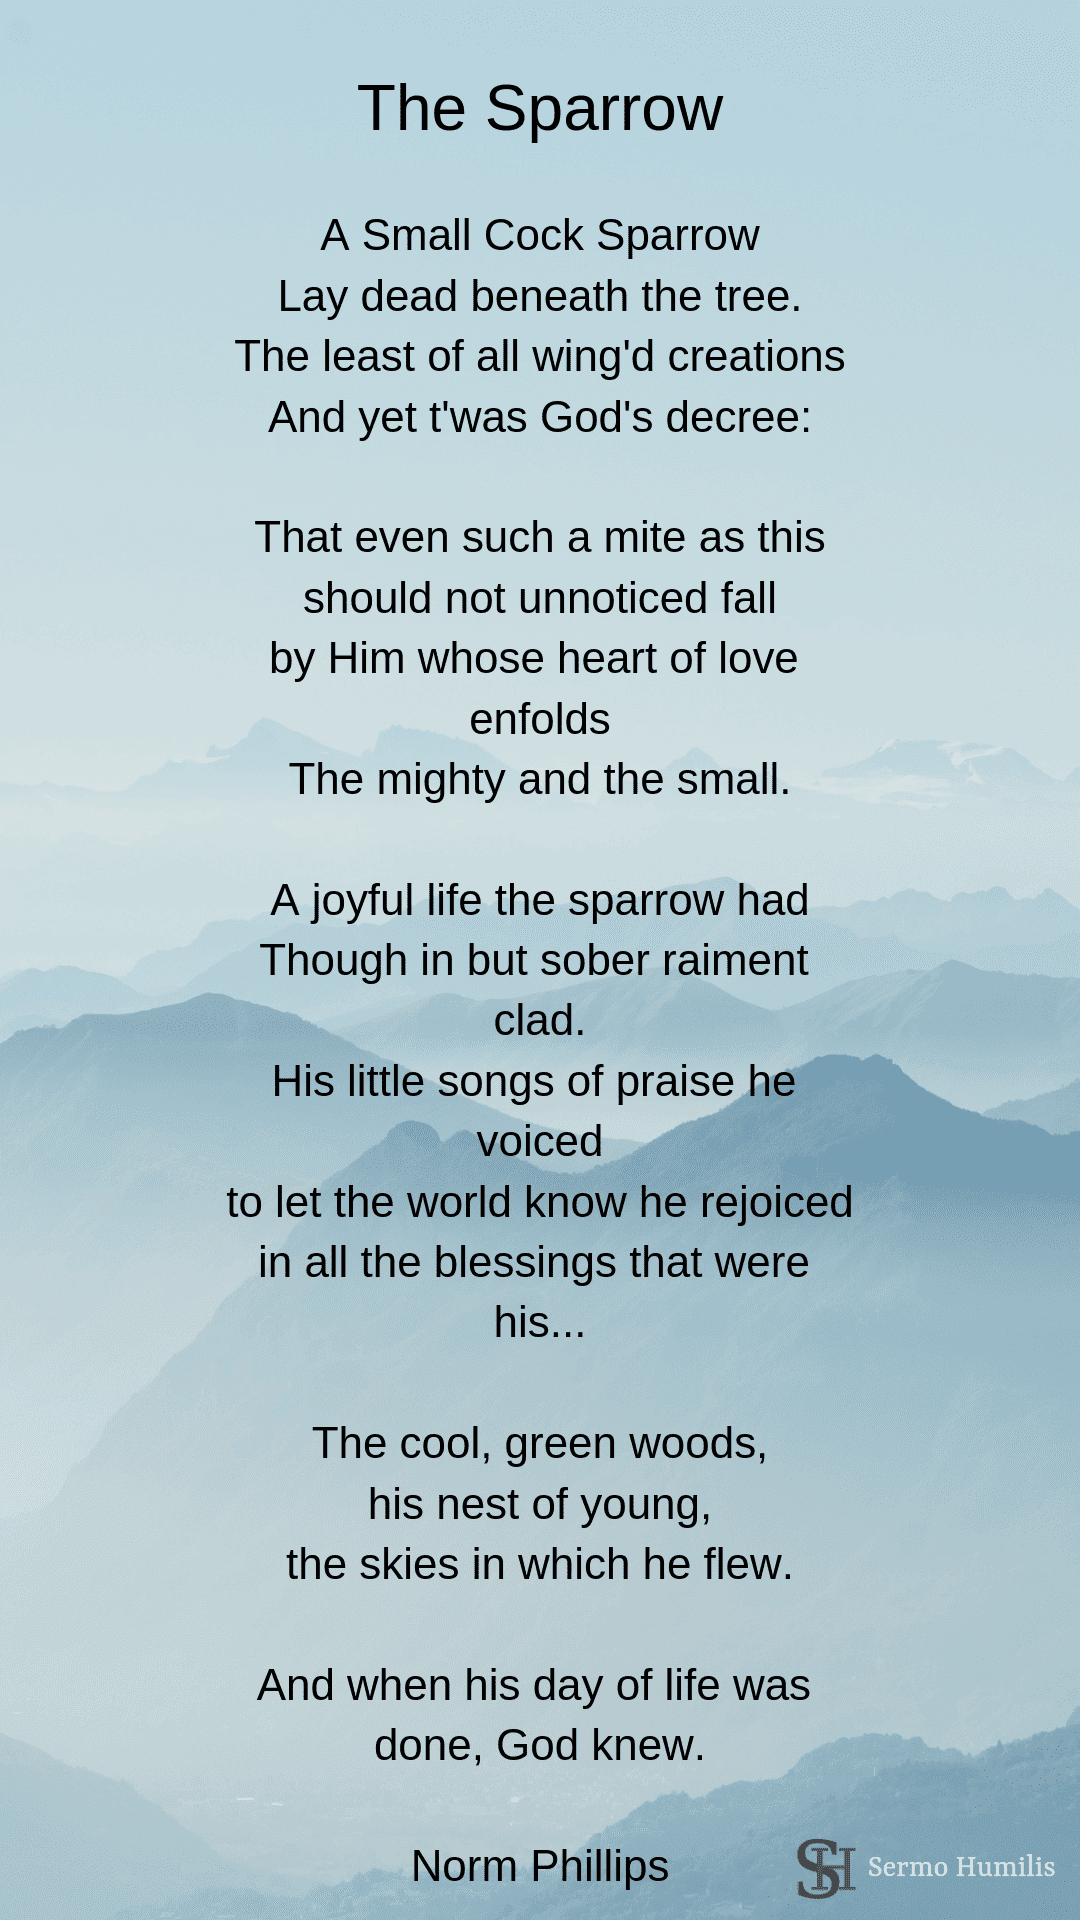 The Sparrow - A Poem